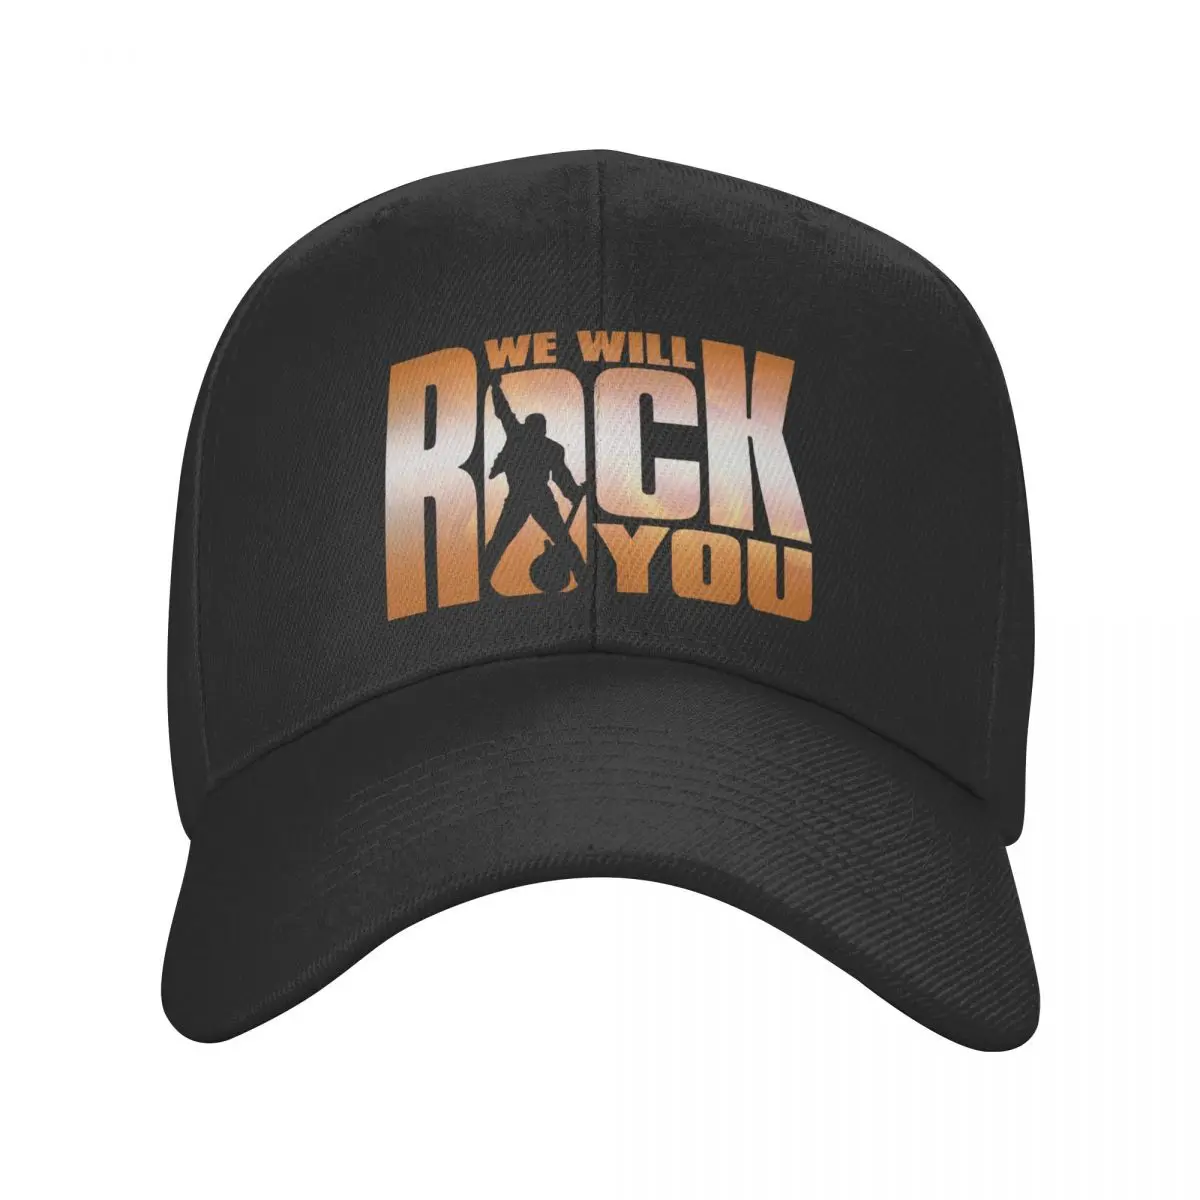 

New We Will Rock You Baseball Cap Men Women Adjustable Queen Rock B Dad Hat Streetwear Snapback Caps Trucker Hats